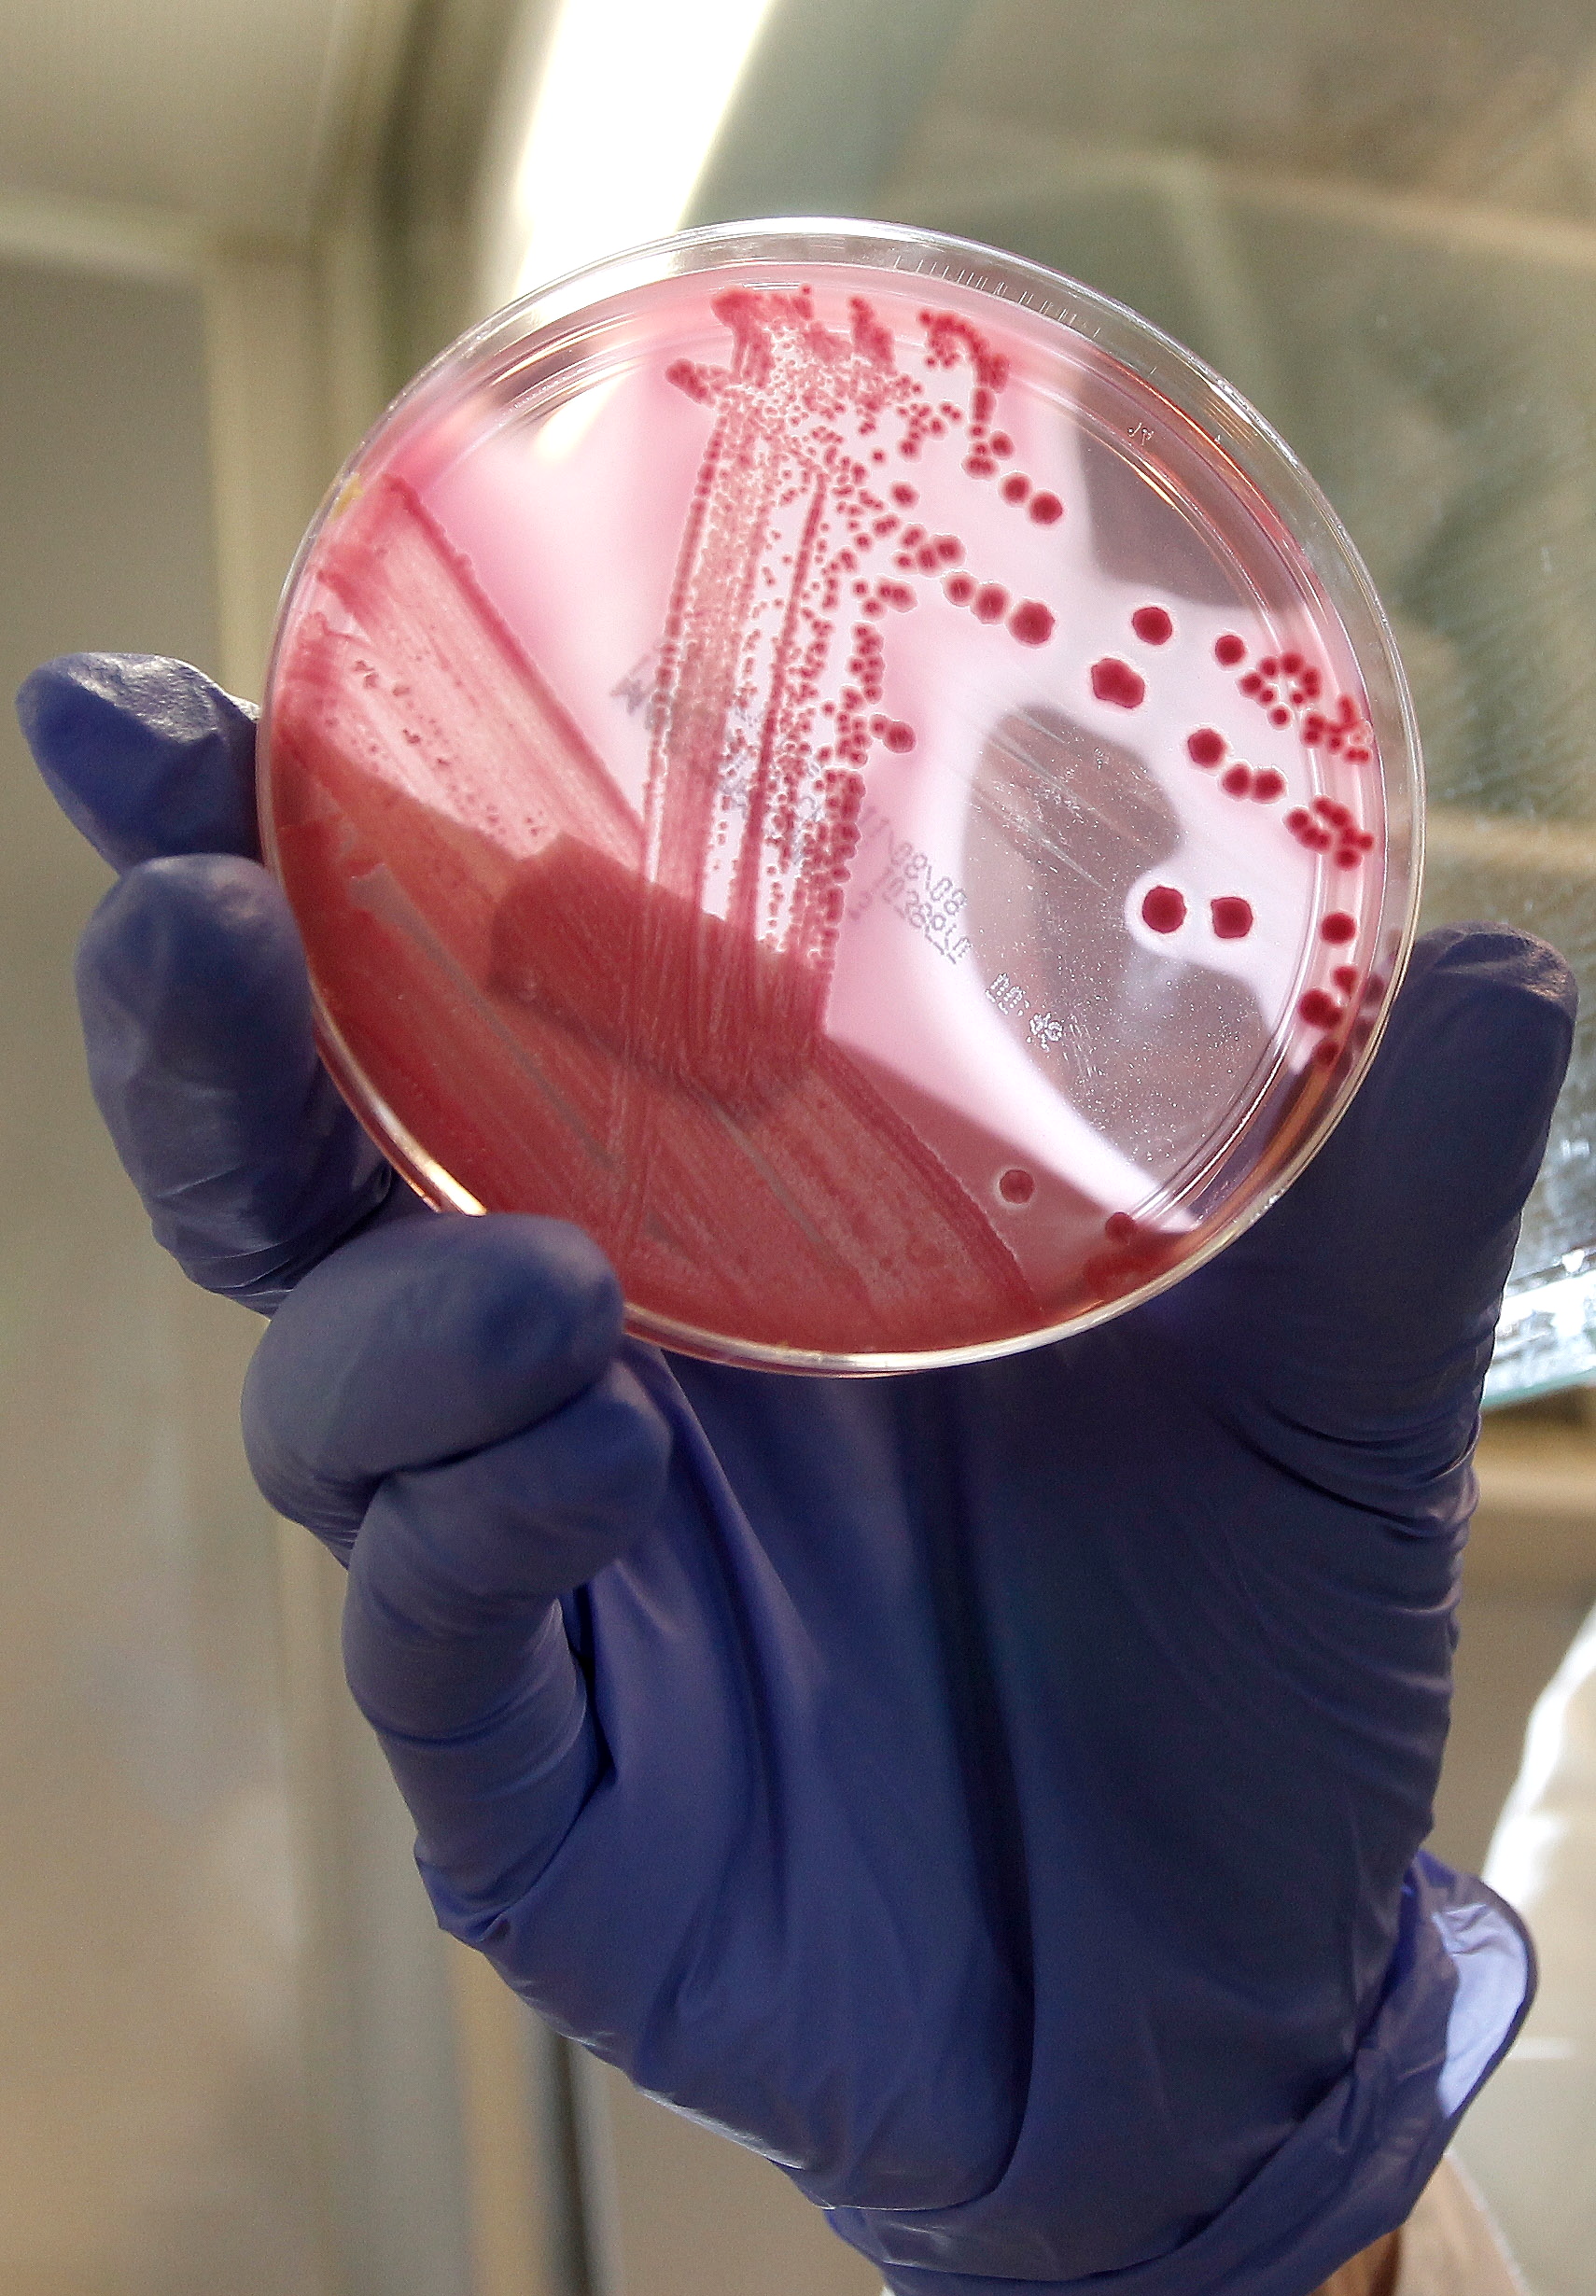 Här visar en person från sjukhuset i Hamburg upp en framodlad bakteriekultur av ehec-bakterien.